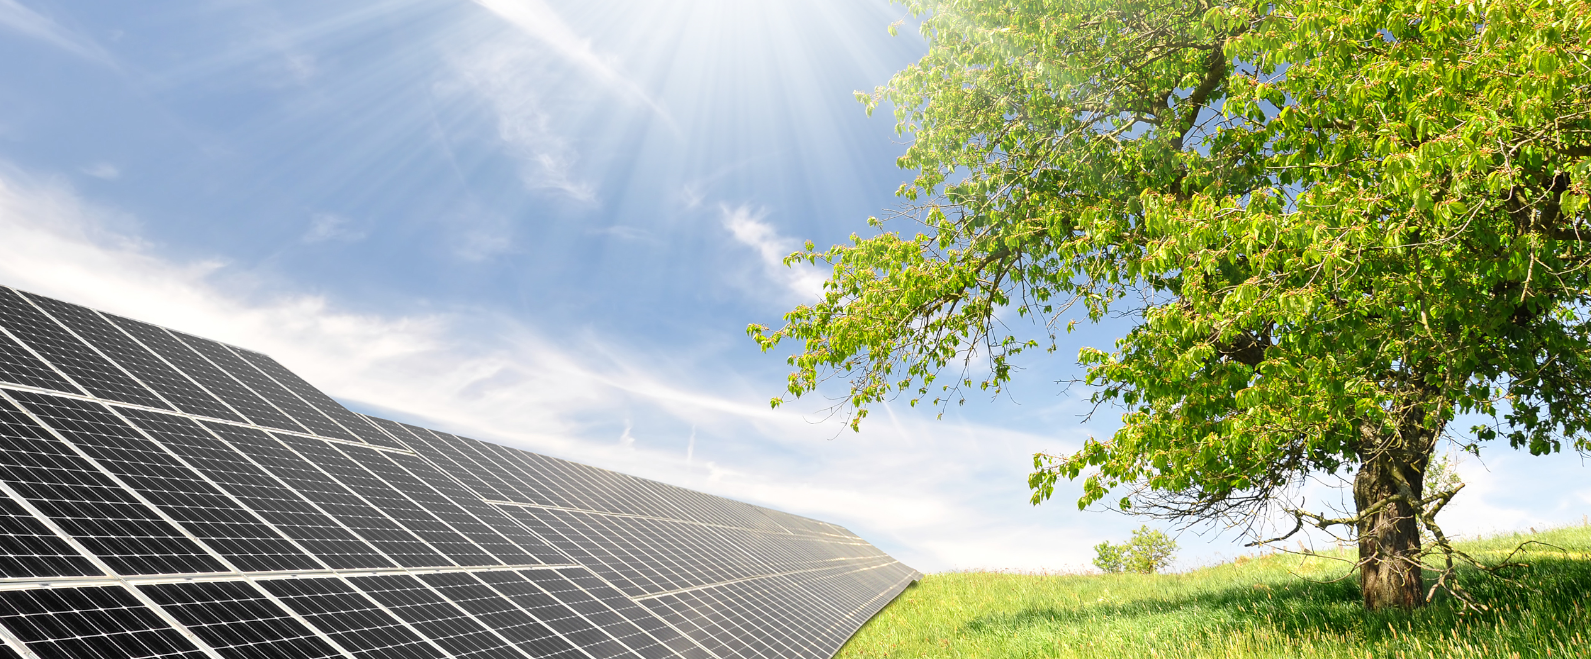 Grupa Azoty S.A. i VSB Holding GmbH zaktualizowali zmodyfikowane kluczowe warunki transakcji nabycia 100% udziałów w kapitale zakładowym Solarfarm Brzezinka